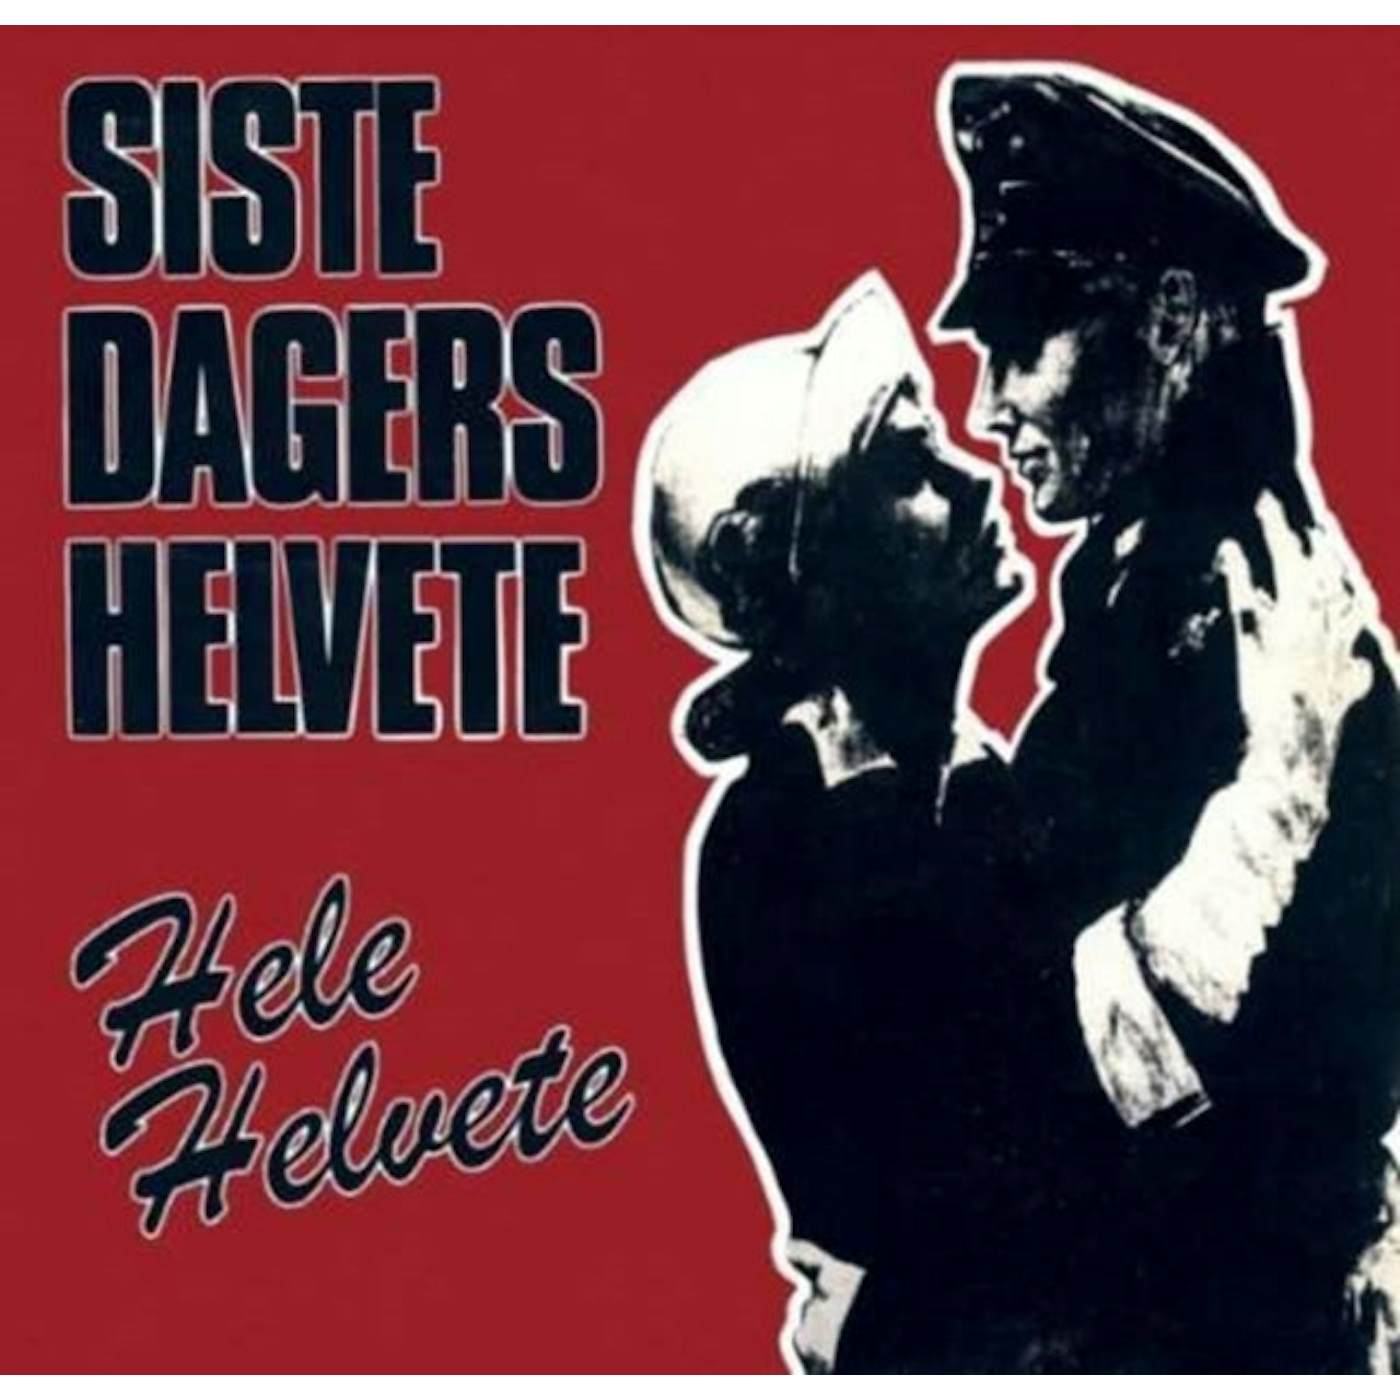 Siste Dagers Helvete CD - Hele Helvete ('83-'09)